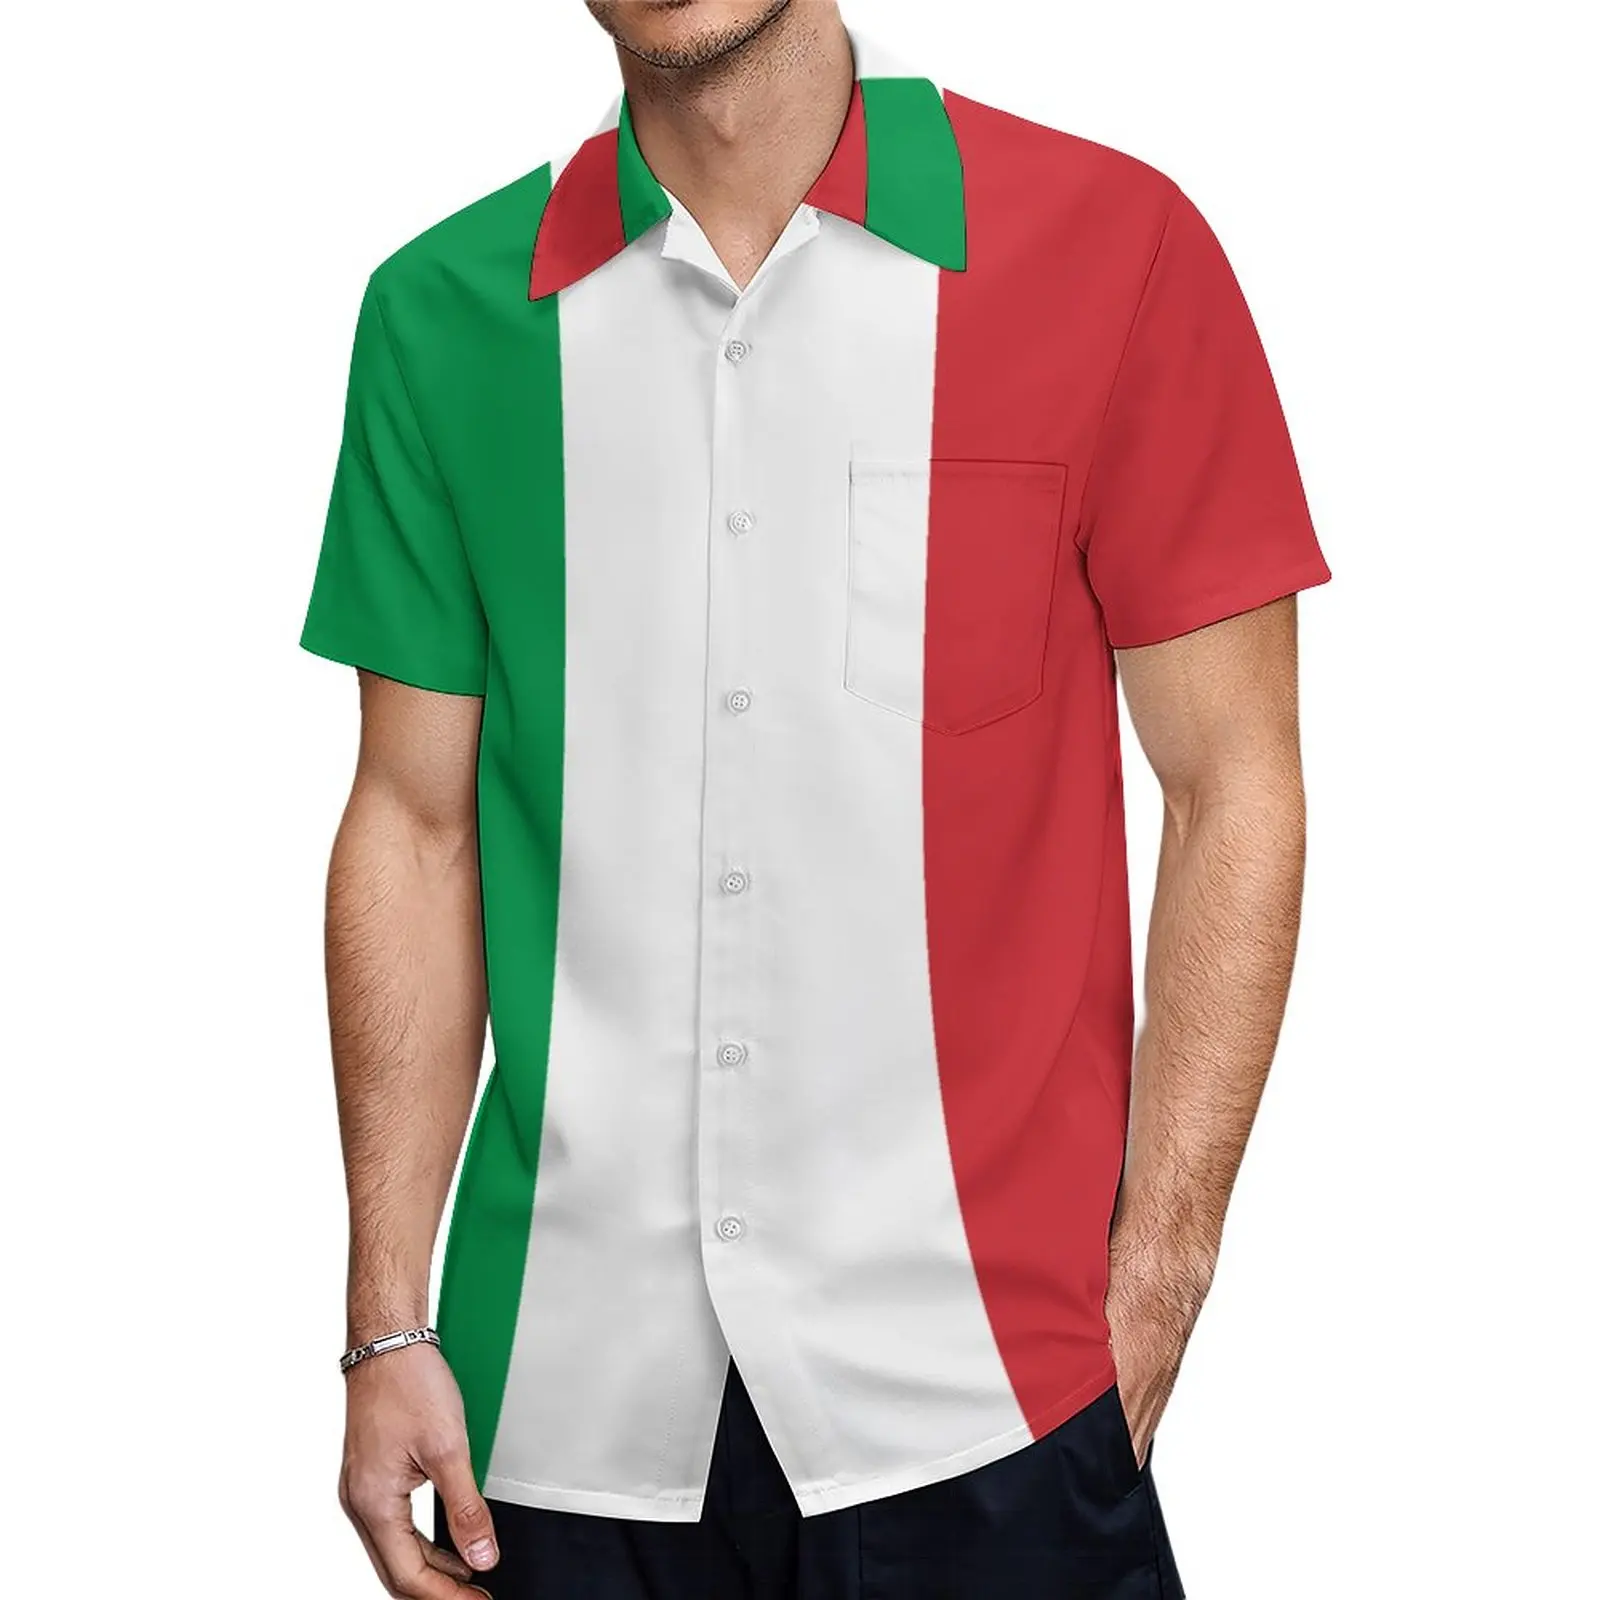 ИТАЛИЯ. Итальянская. Итальянский флаг. Крутые футболки с графическим флагом, брючное платье с коротким рукавом, высококачественная рубашка для бега, размер США